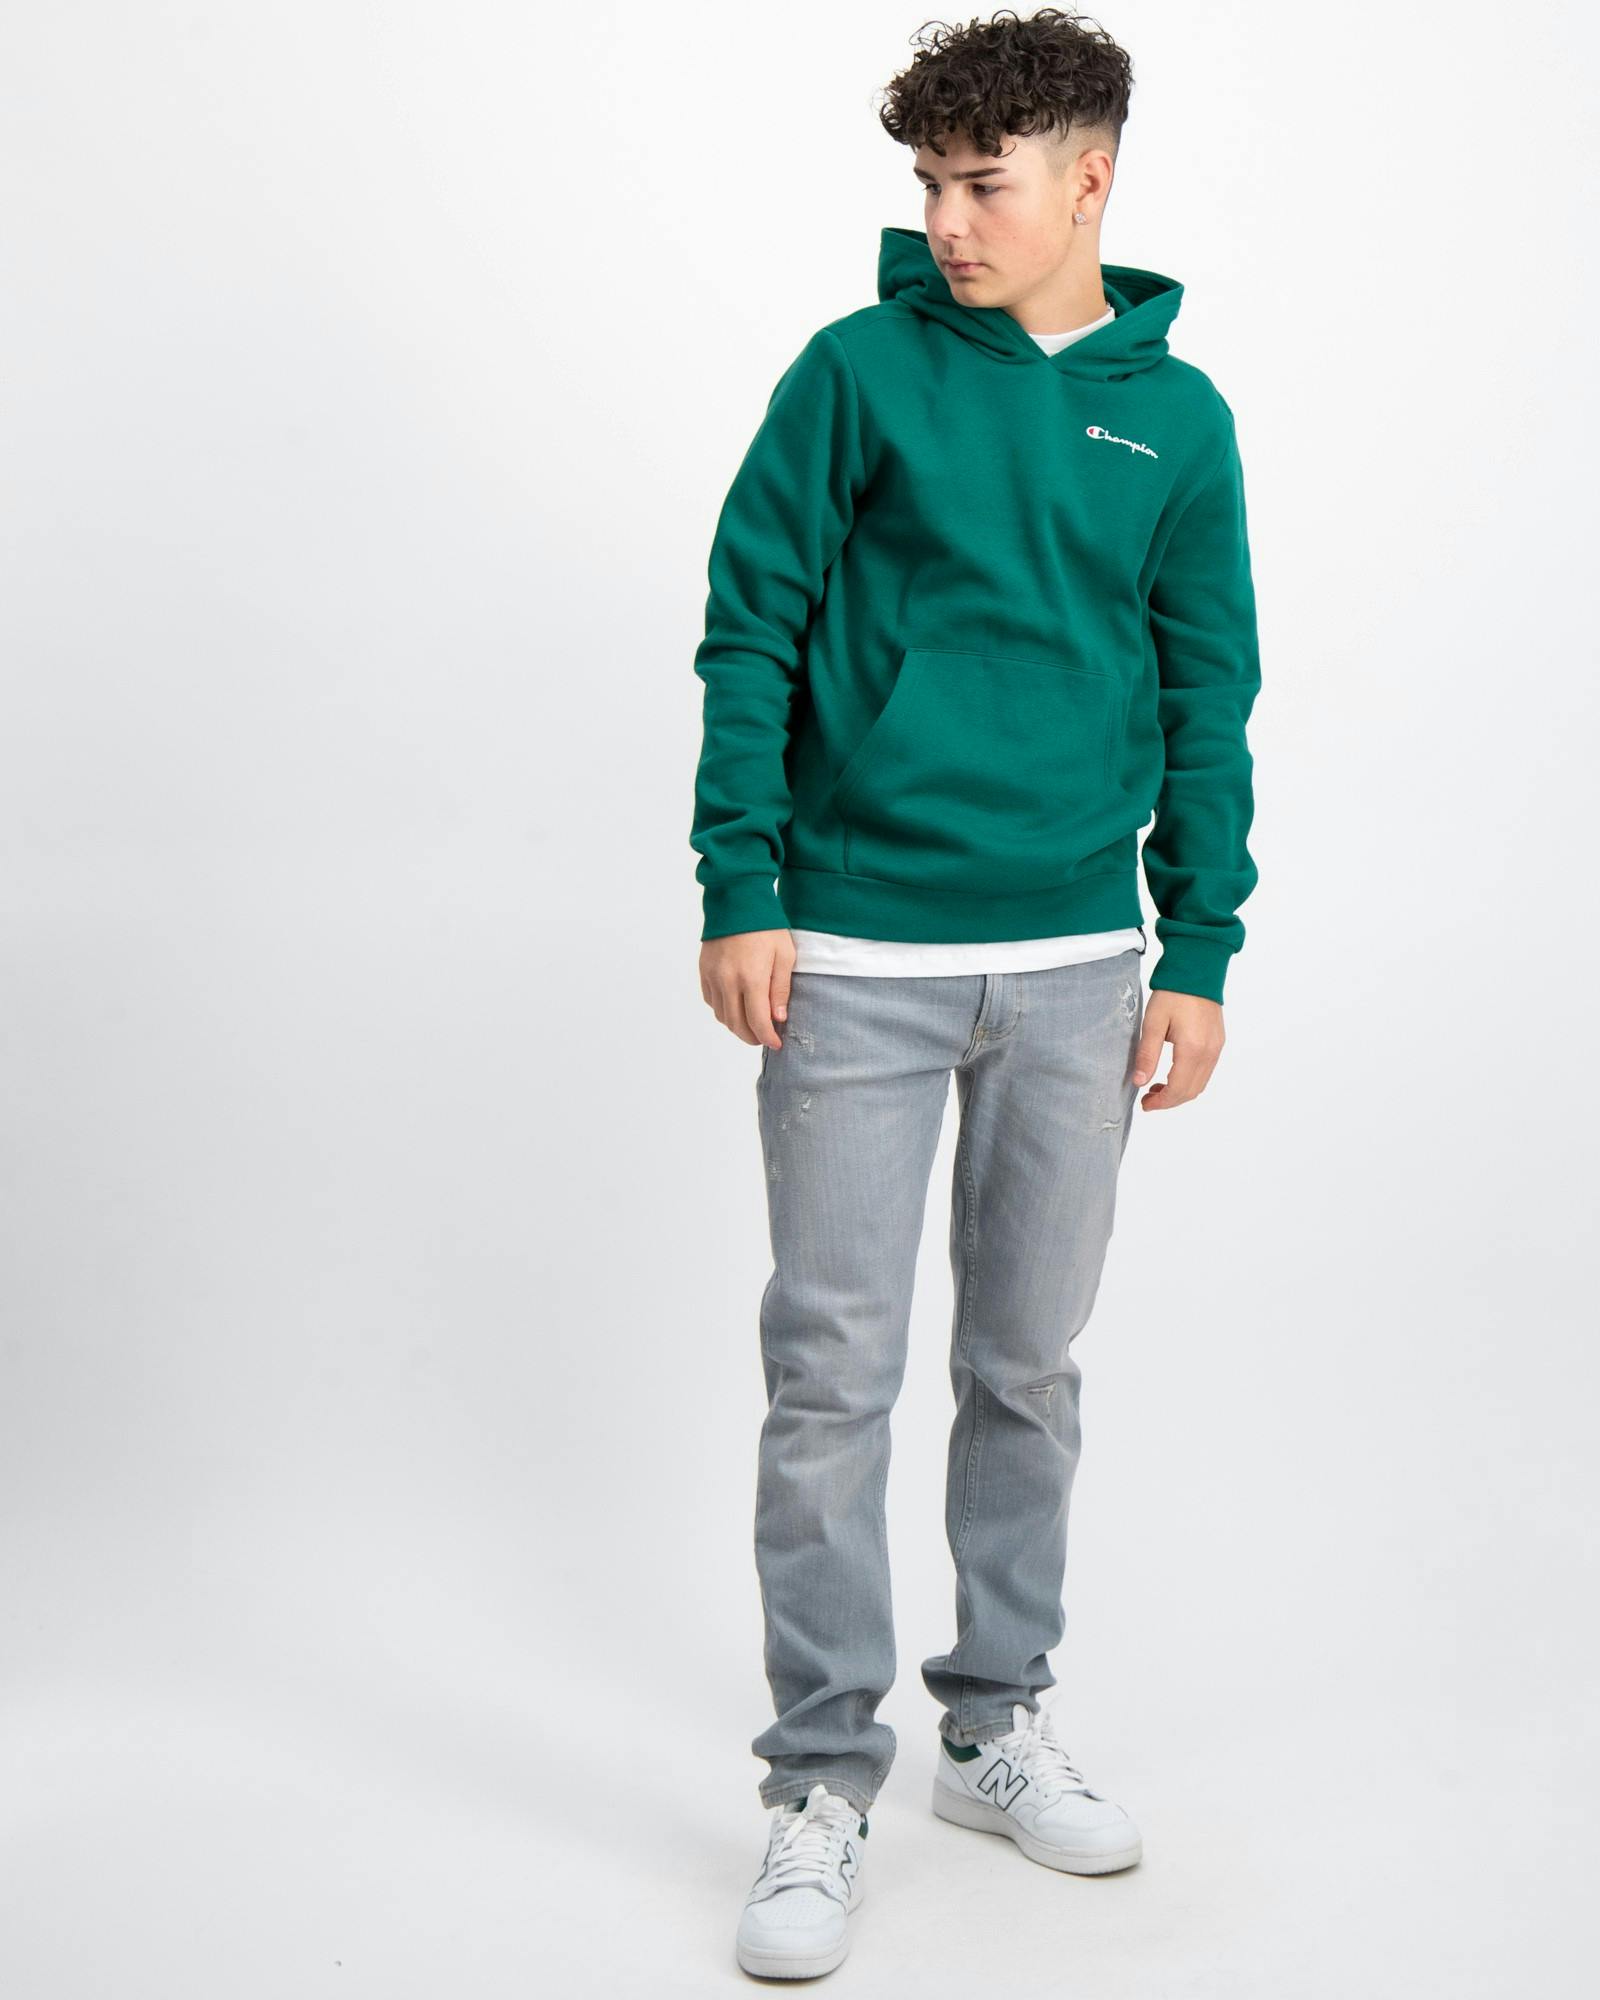 Grün Hooded Sweatshirt für Jungen | Kids Store Brand